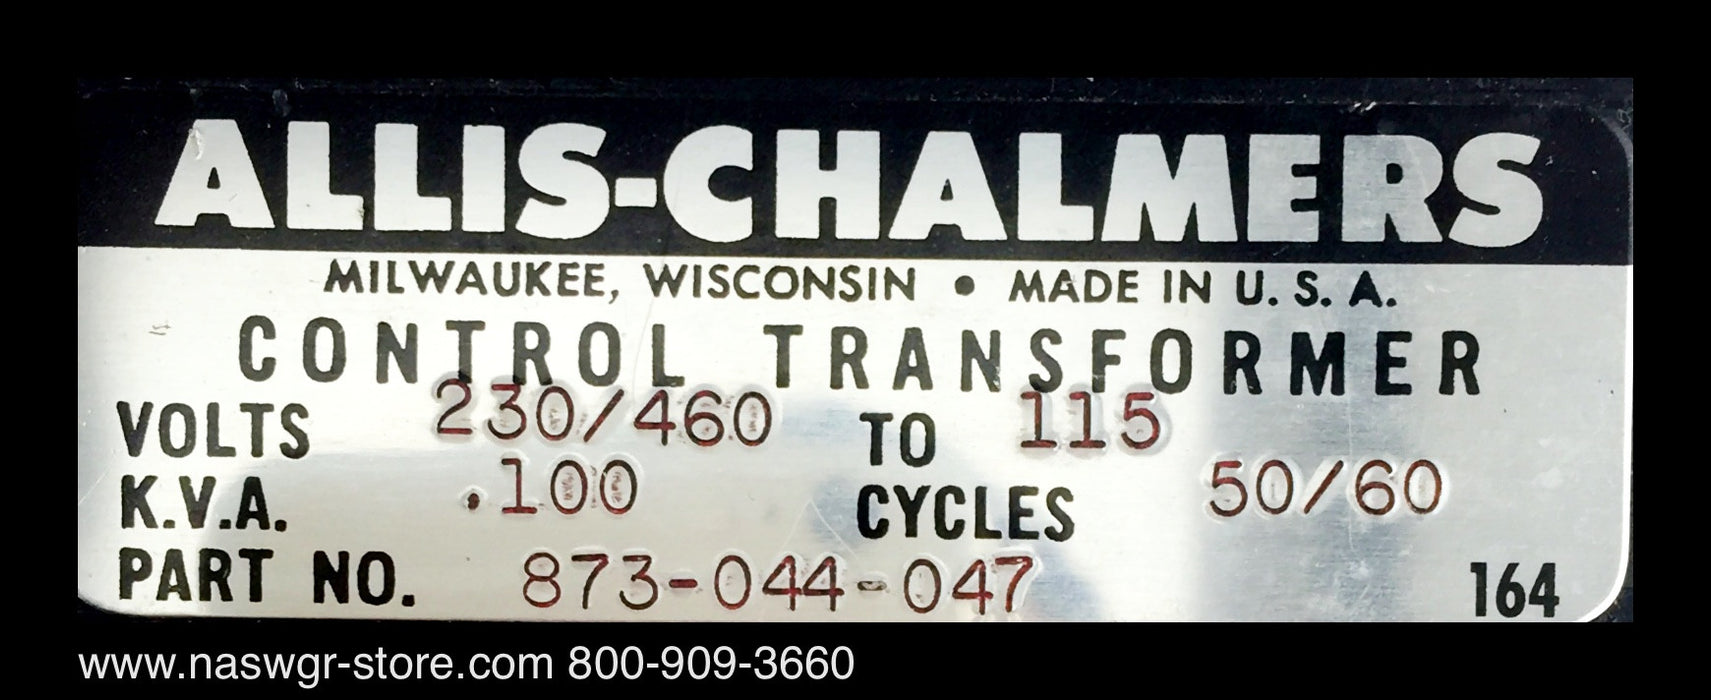 873-044-047 ~ Allis Chalmers 873-044-047 Control Transformer